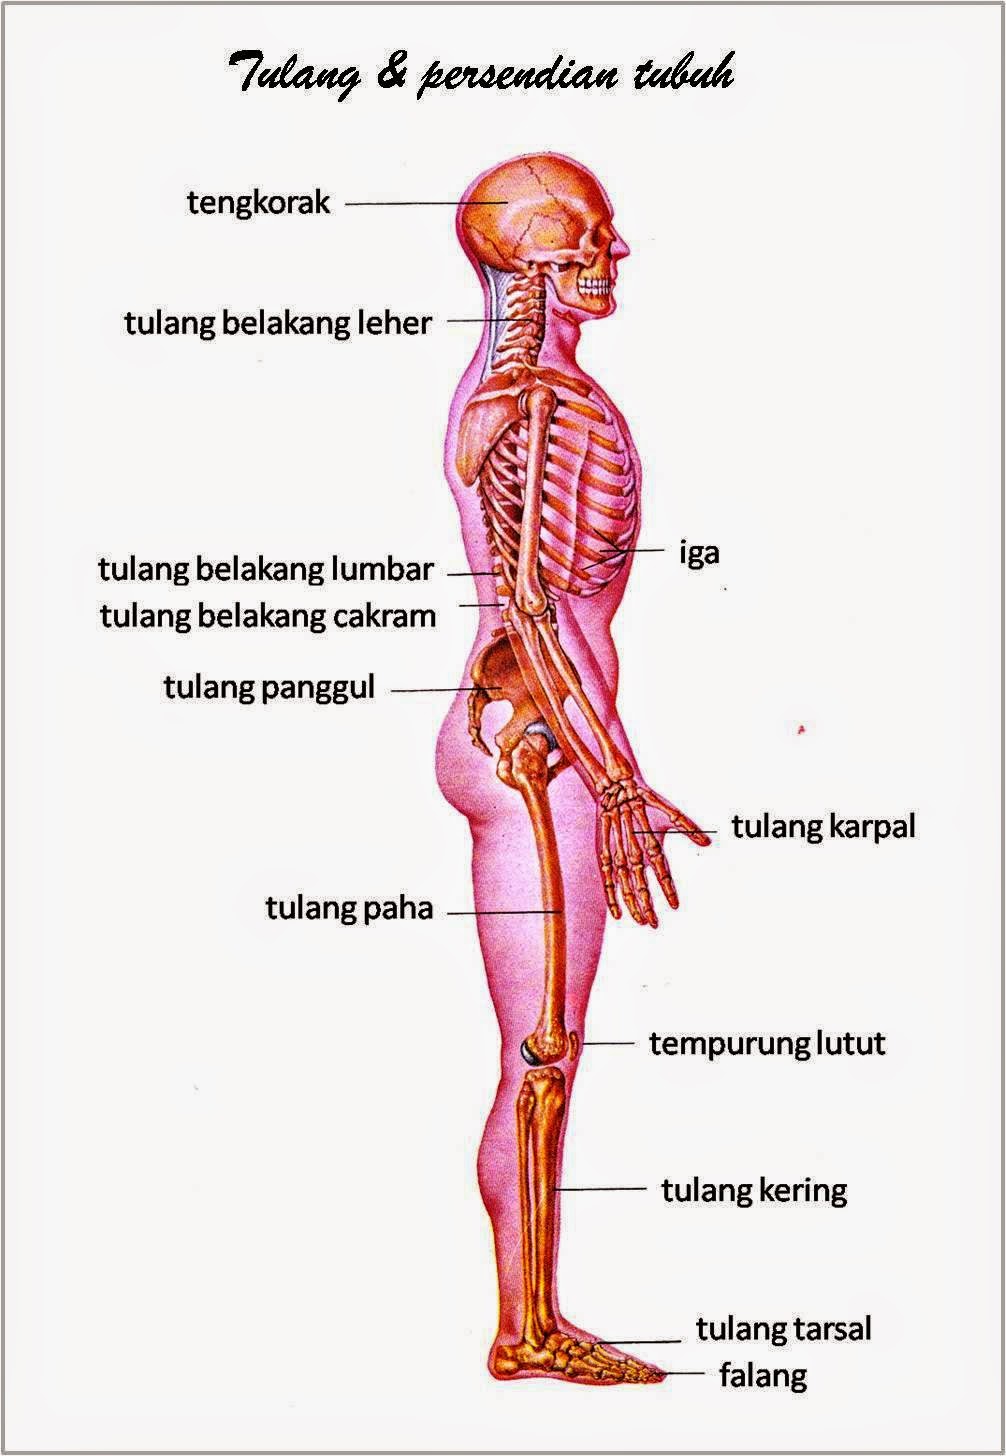 gambar anggota tubuh tulang dan persendian